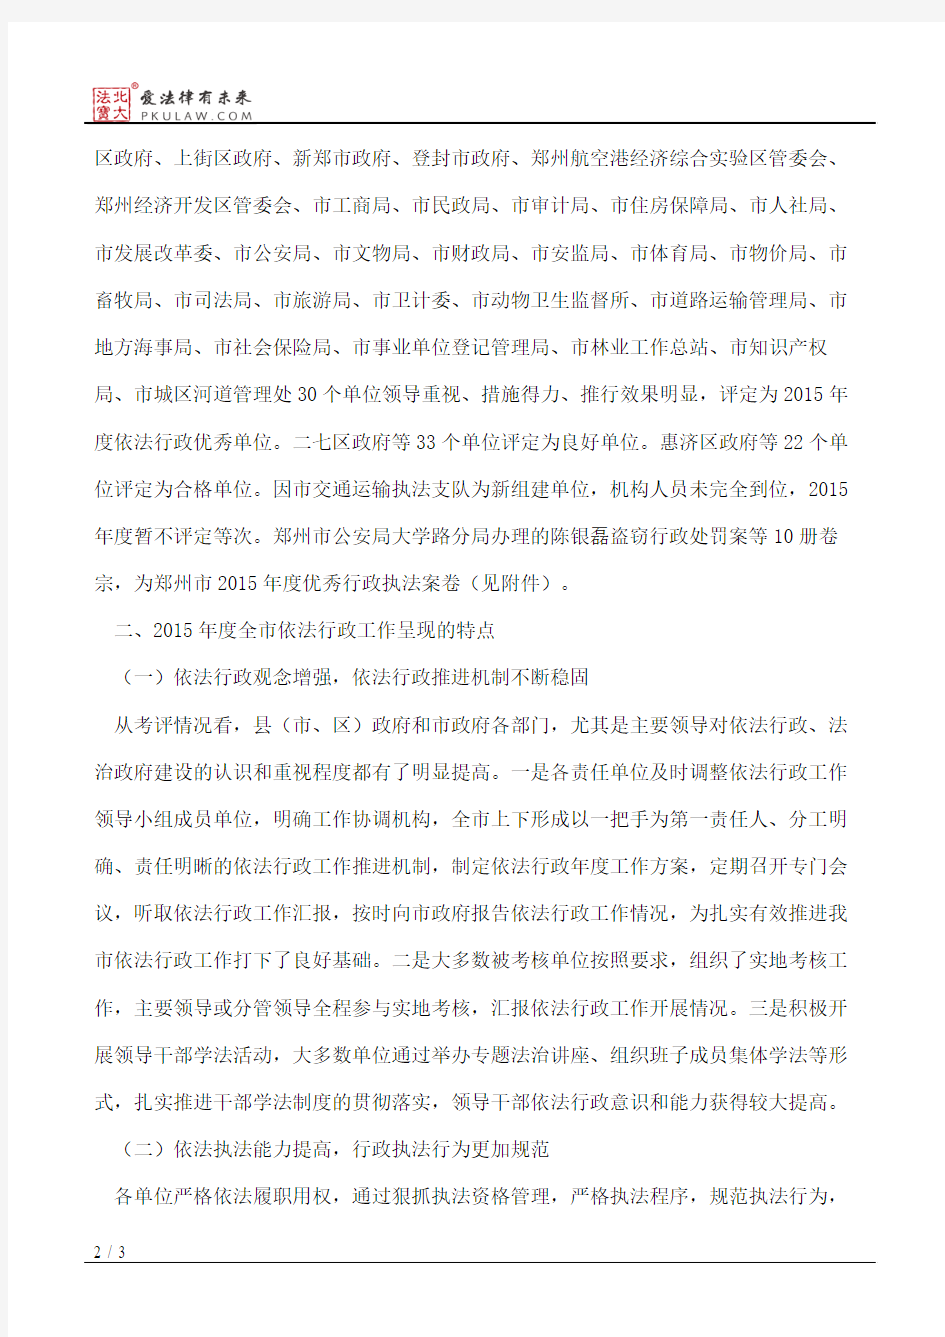 郑州市人民政府关于2015年度依法行政考核情况的通报